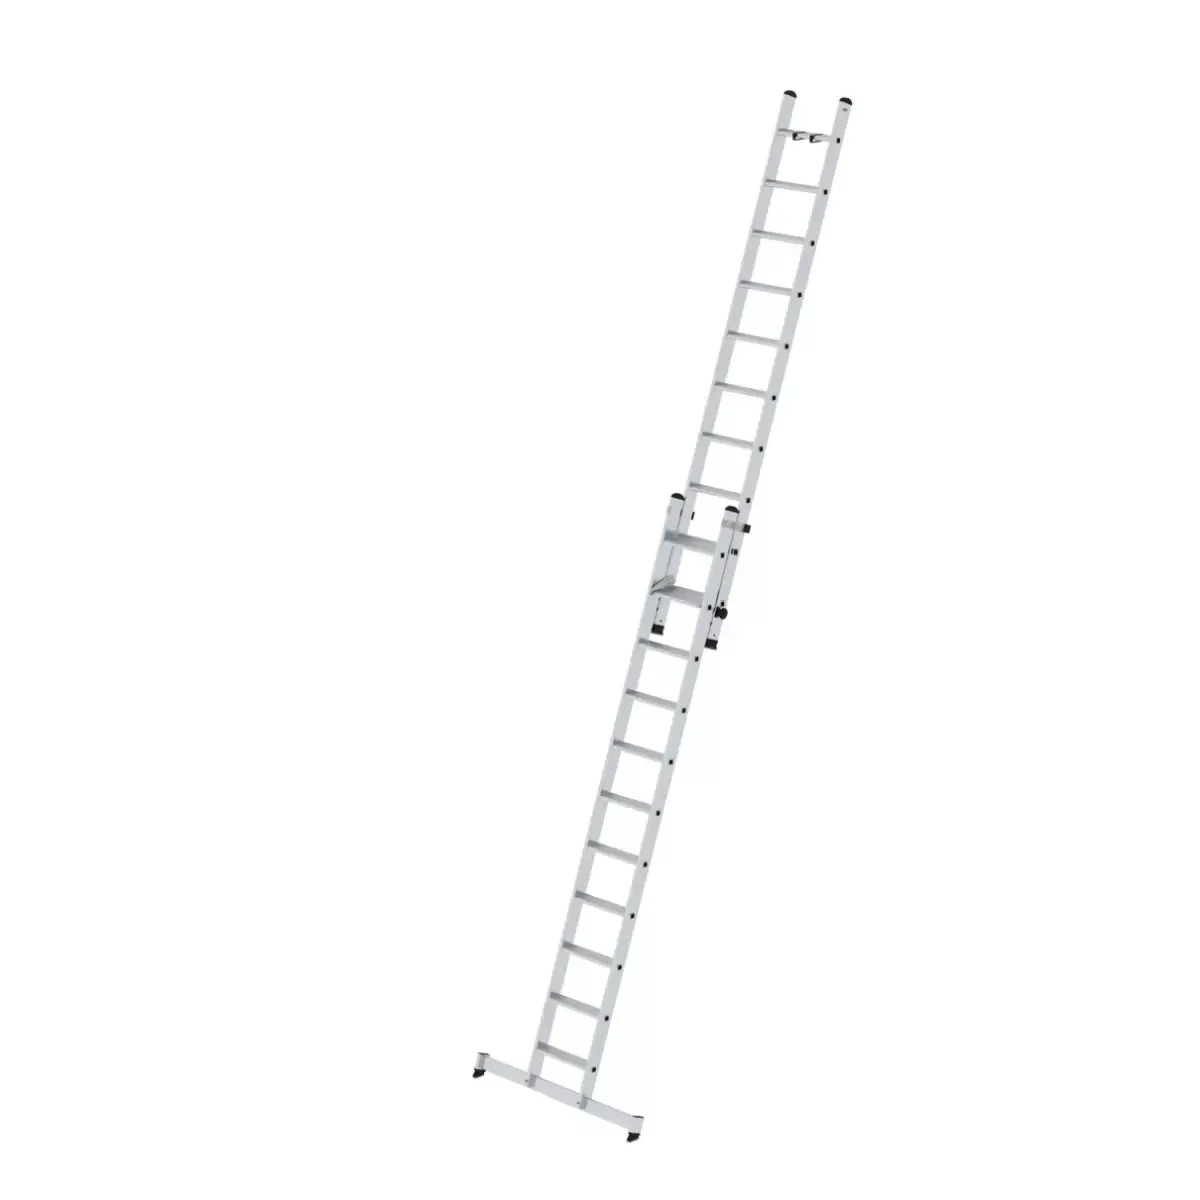 Stufen-Schiebeleiter 2-teilig mit nivello®-Traverse 1x11 + 1x10 Stufen